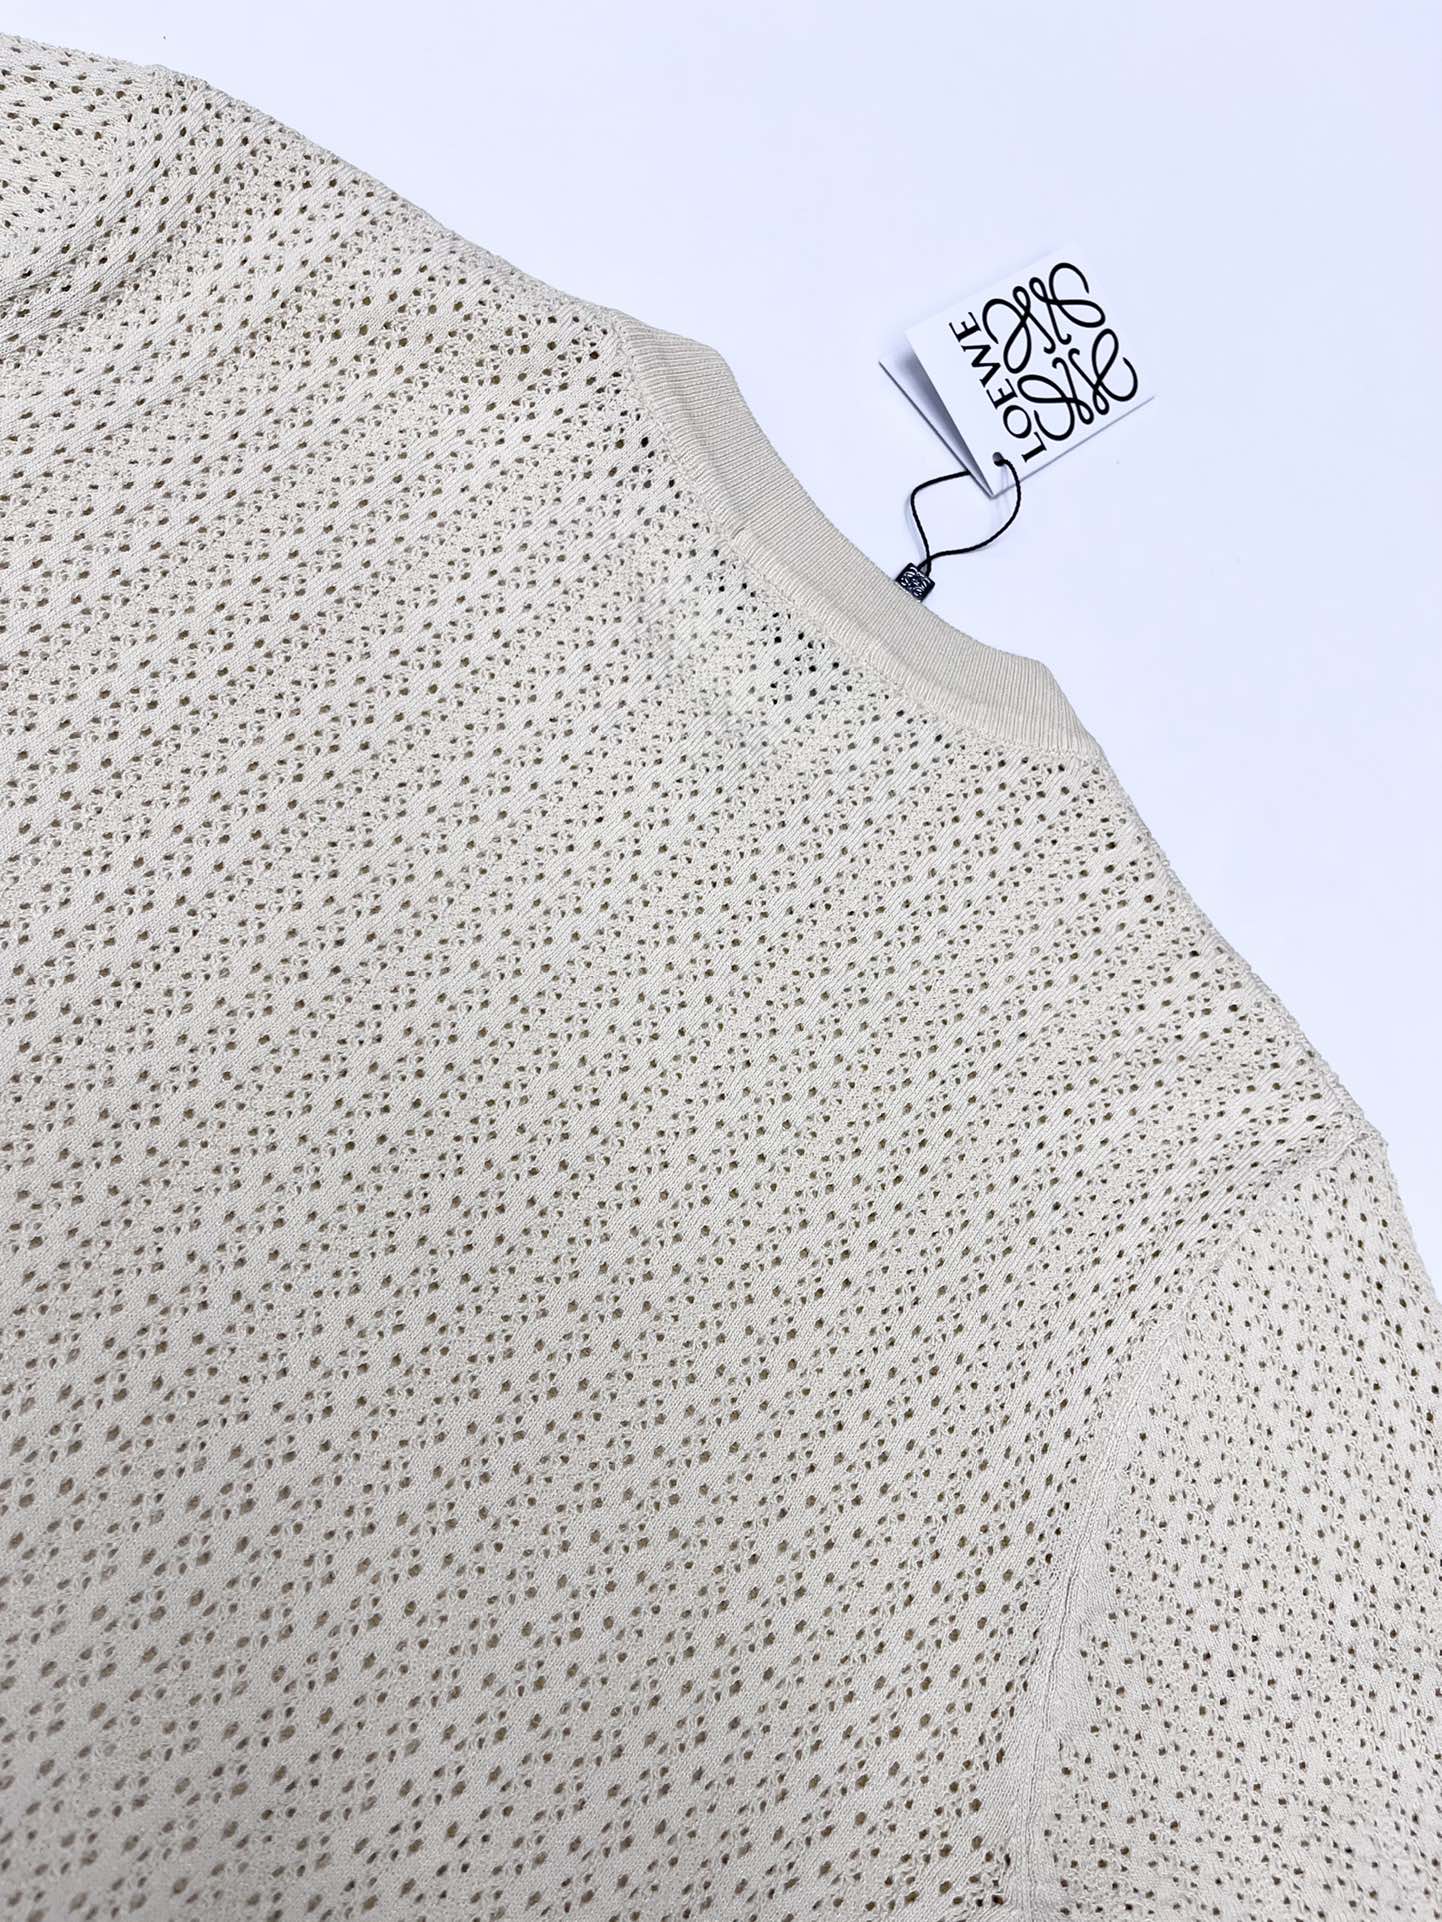 Loew*24ss新款毛衣针织短袖超经典设计简约没有任何多余累赘感衣橱不可缺少的一件百搭单品采用优质羊毛